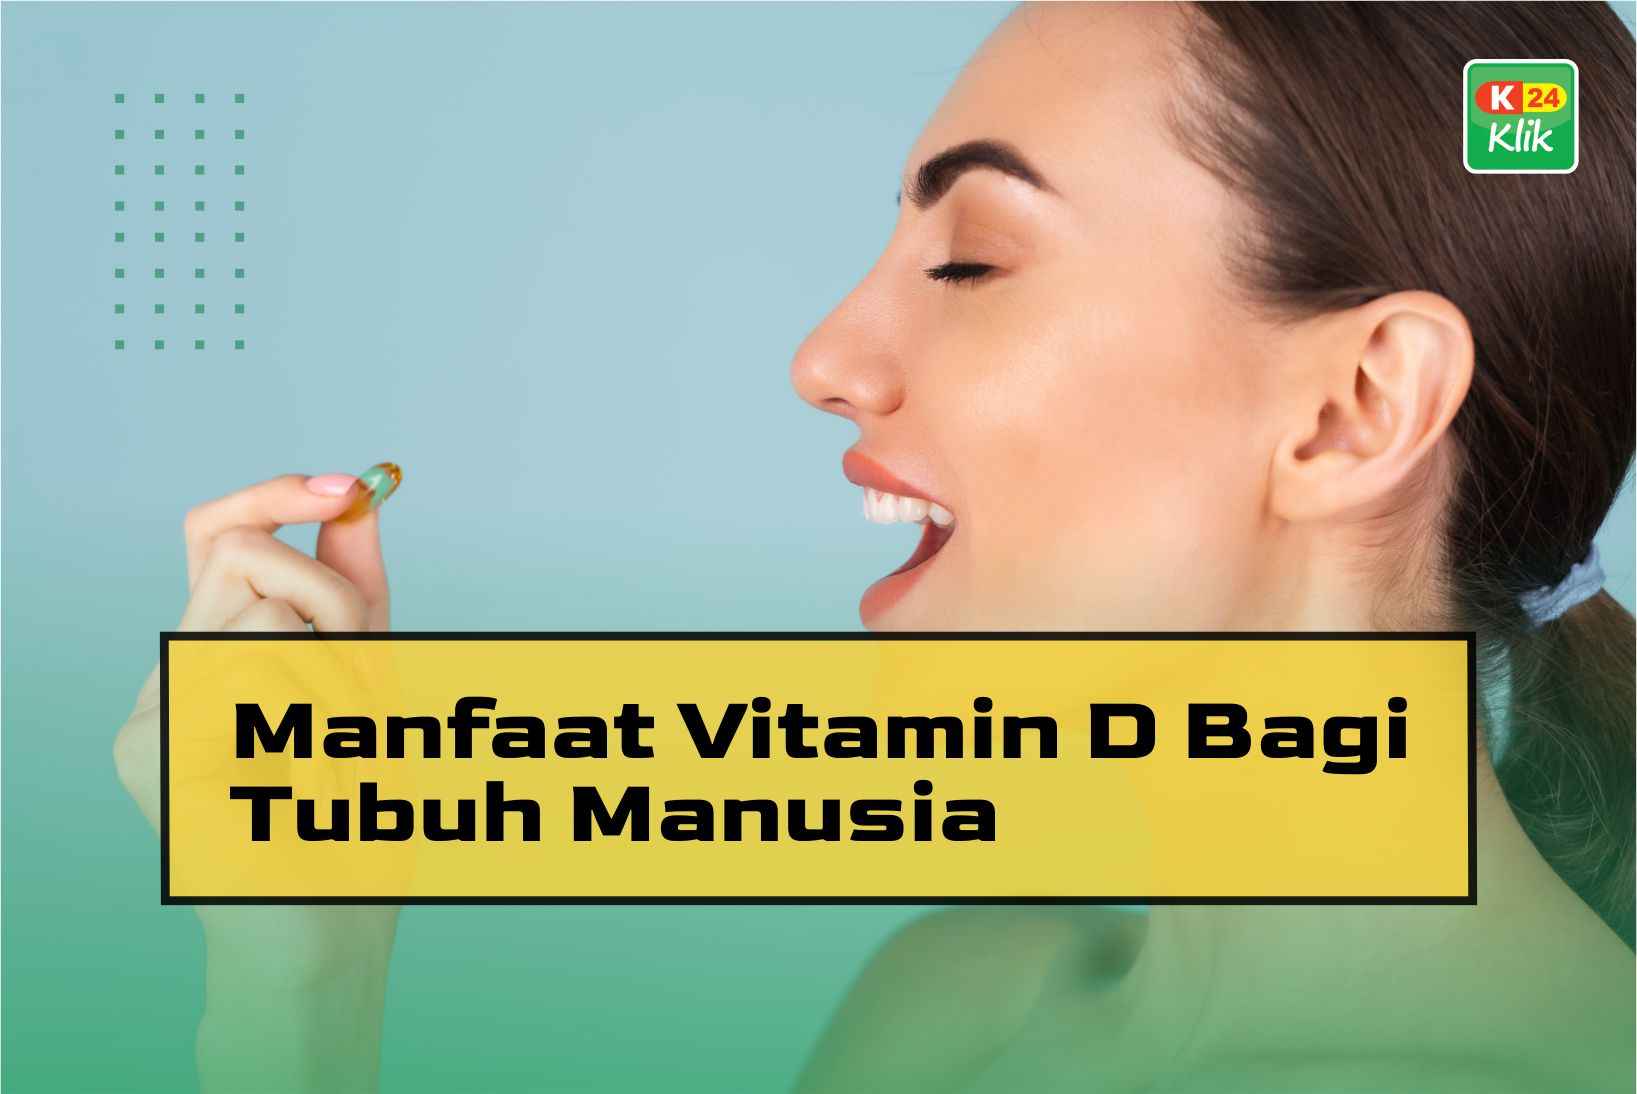 Manfaat Vitamin D Bagi Tubuh Manusia